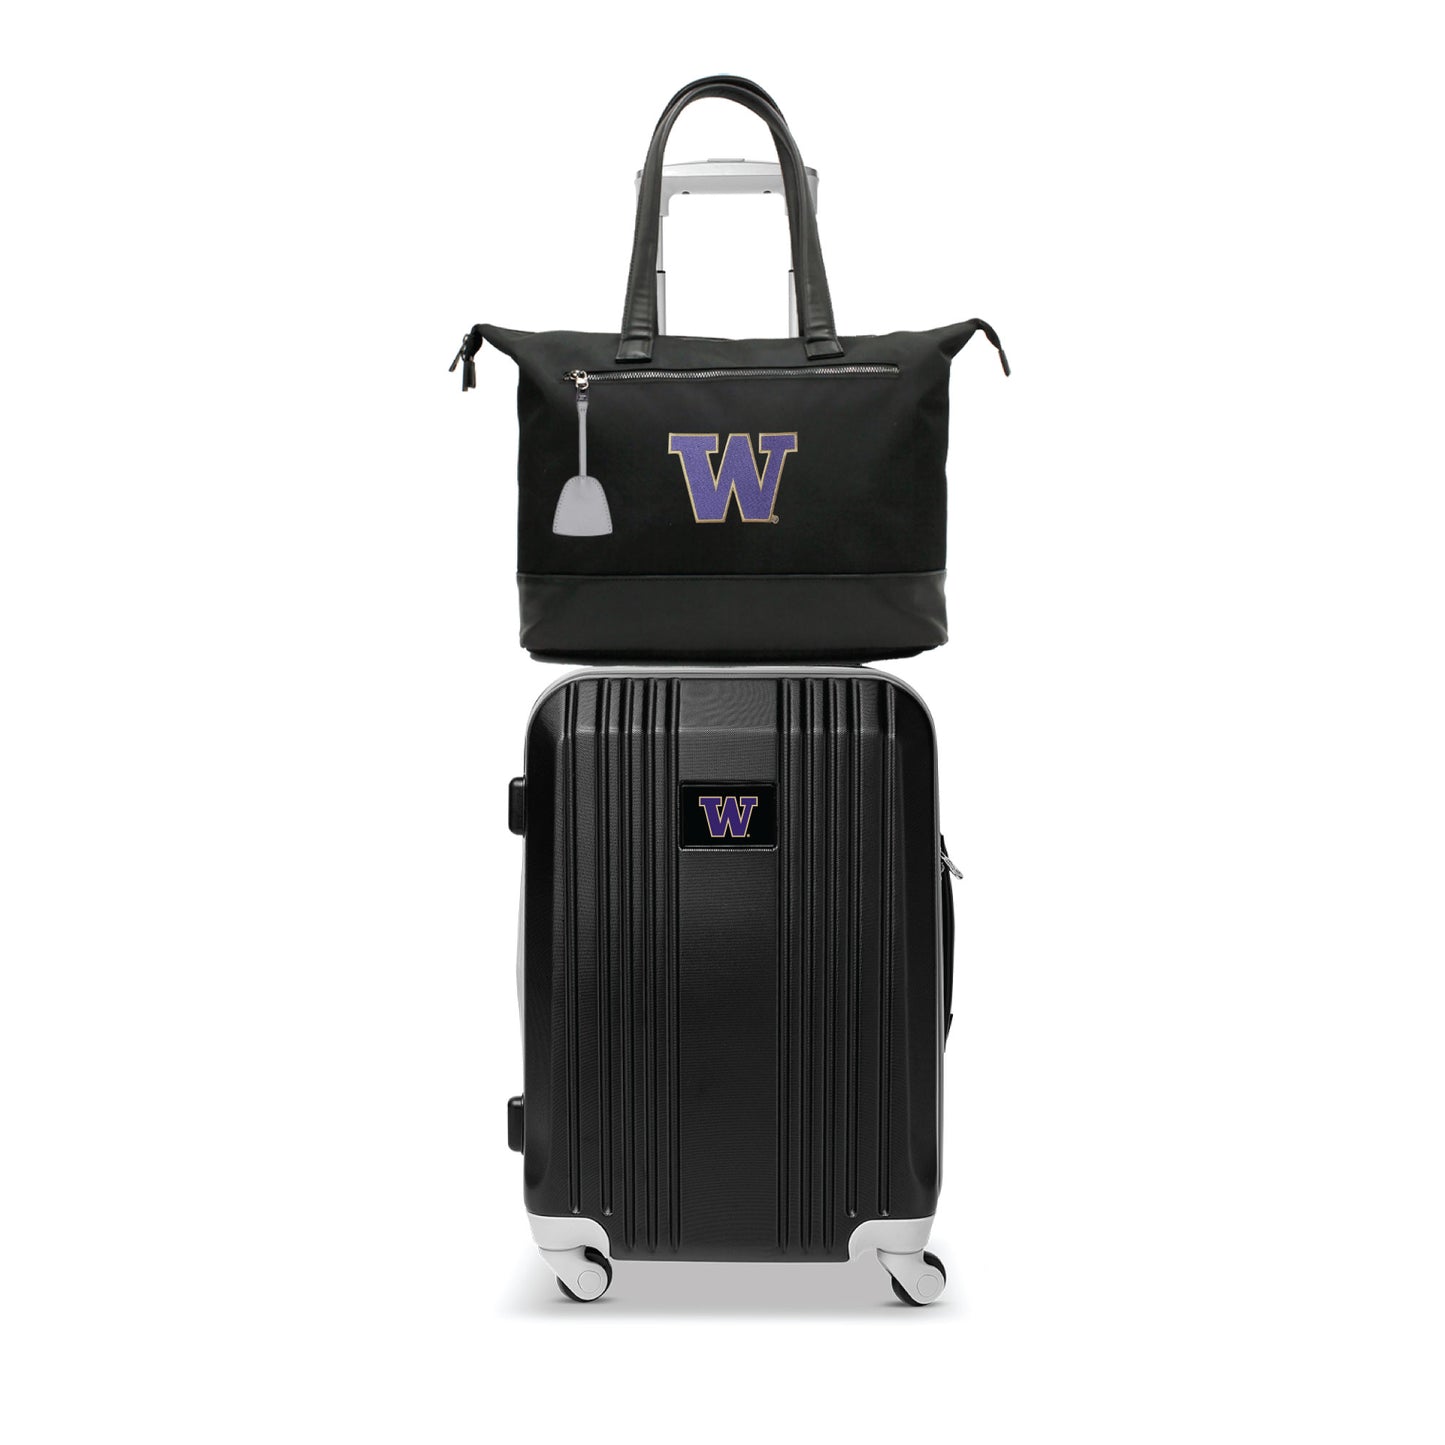 Washington Huskies Premium Laptop Tote Bag and Luggage Set